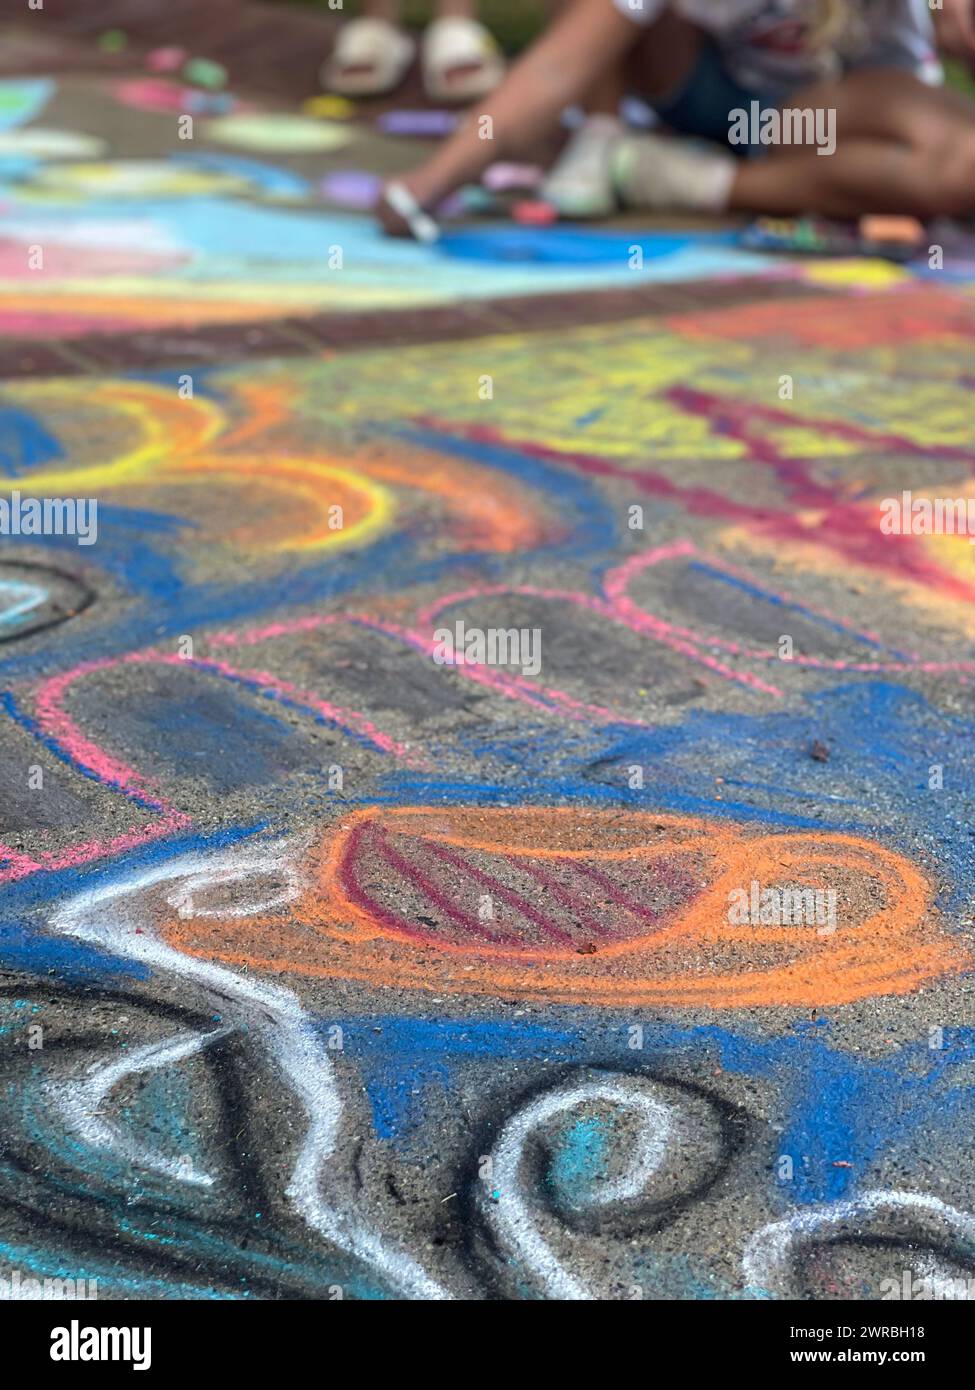 Le trottoir d'un parc public est recouvert d'art de craie coloré lors d'un festival d'art de craie locak. Banque D'Images